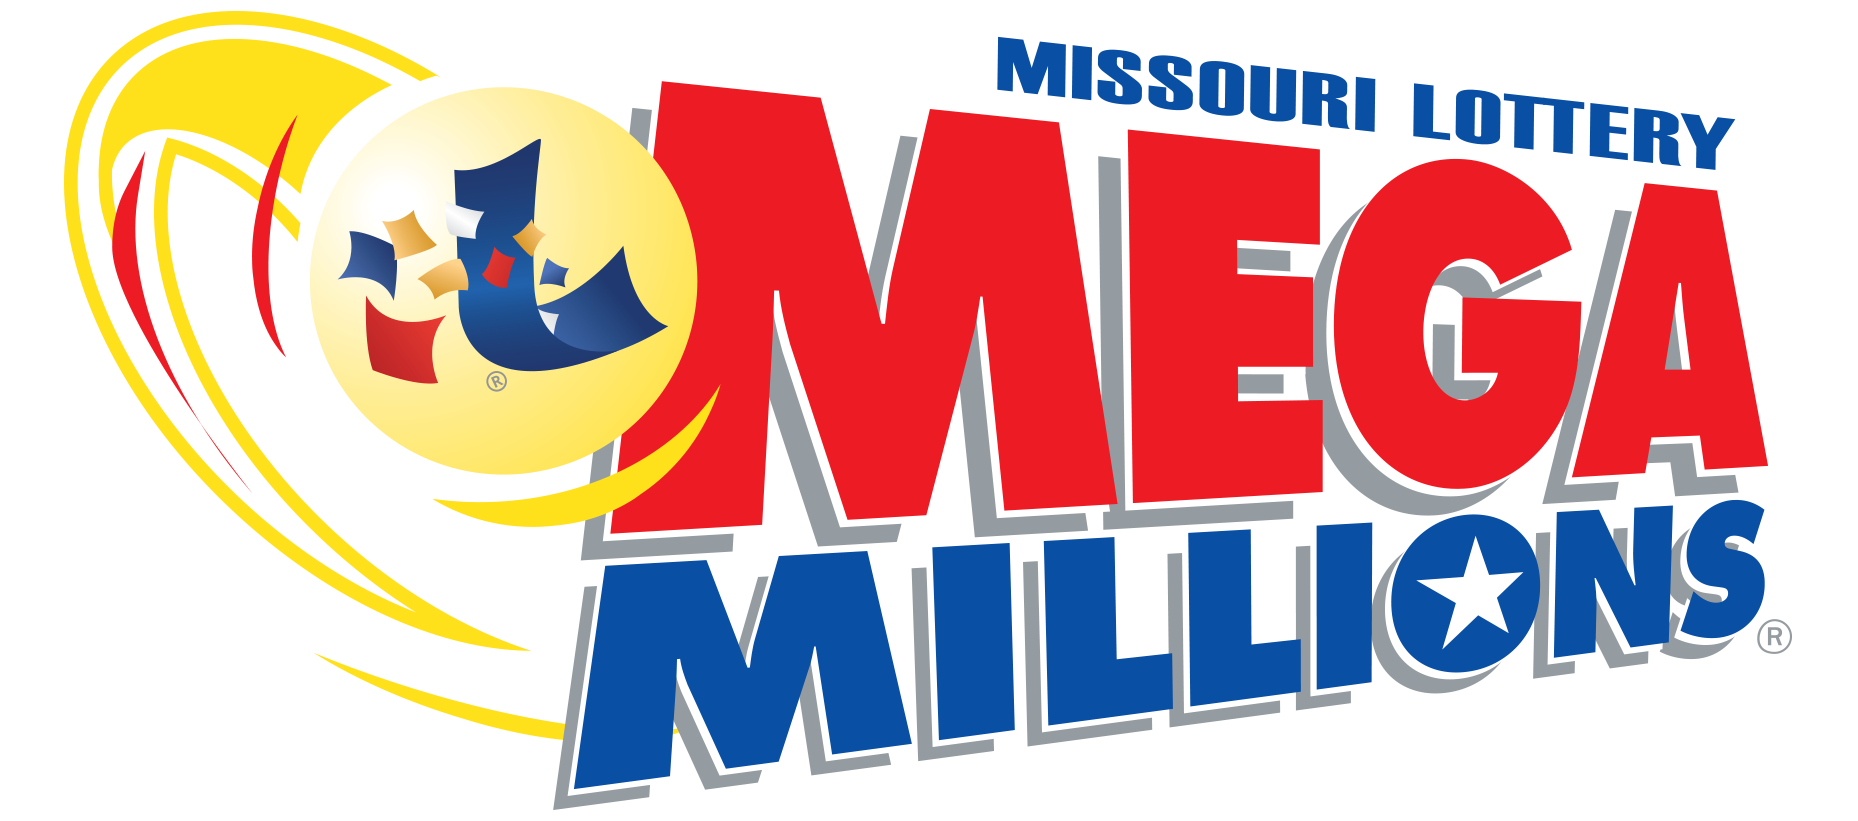 Mega Millions